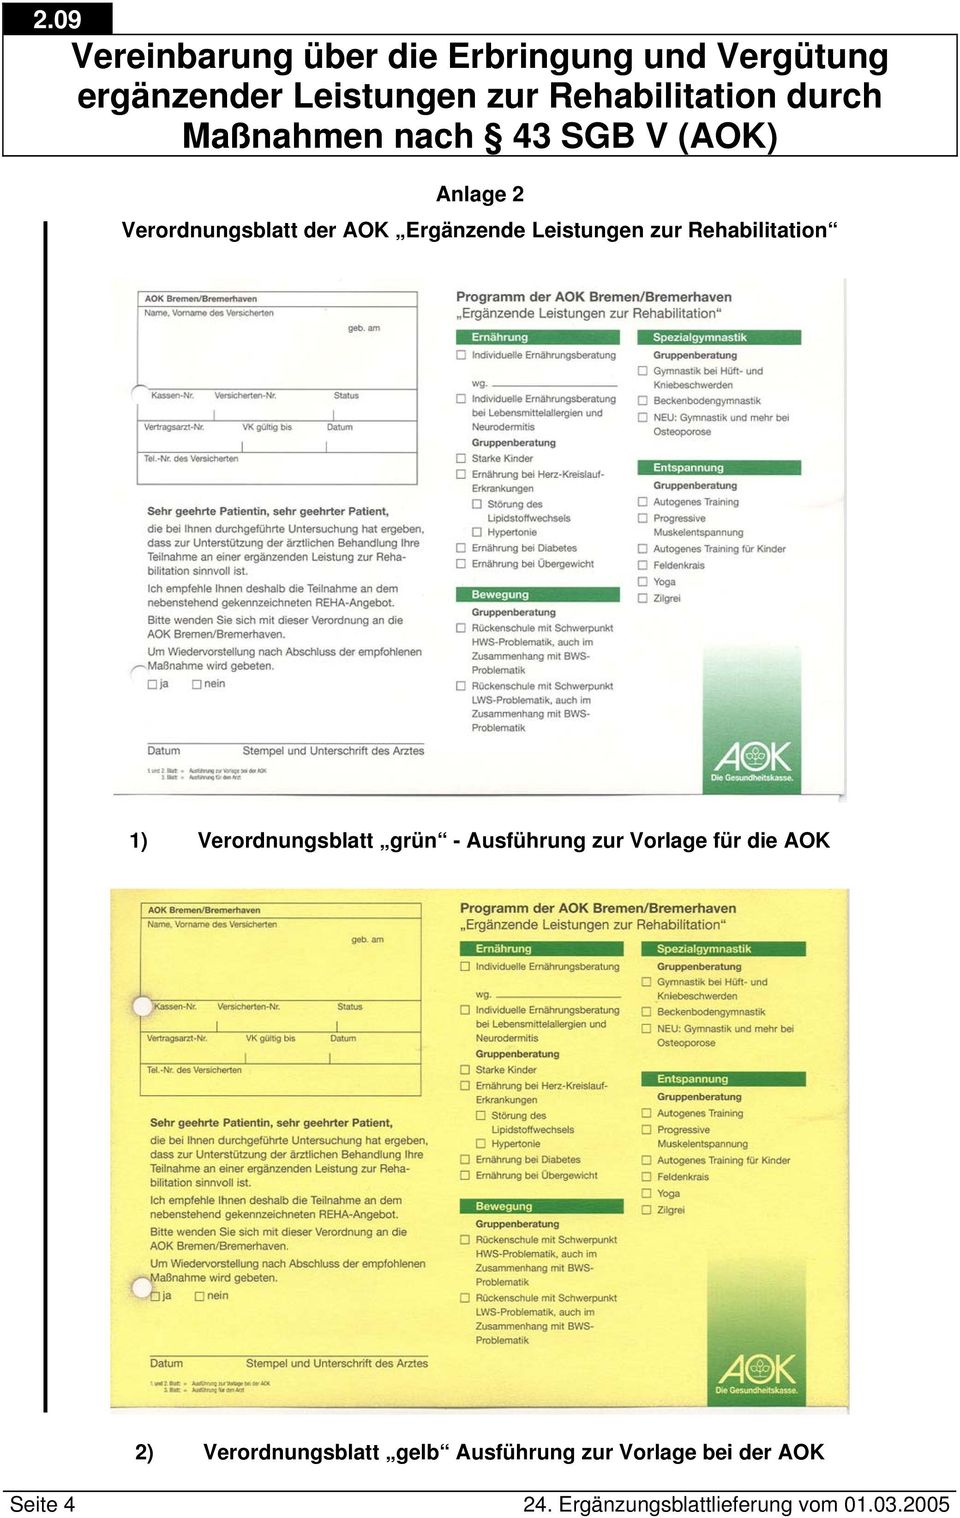 Vorlage für die AOK 2) Verordnungsblatt gelb Ausführung zur